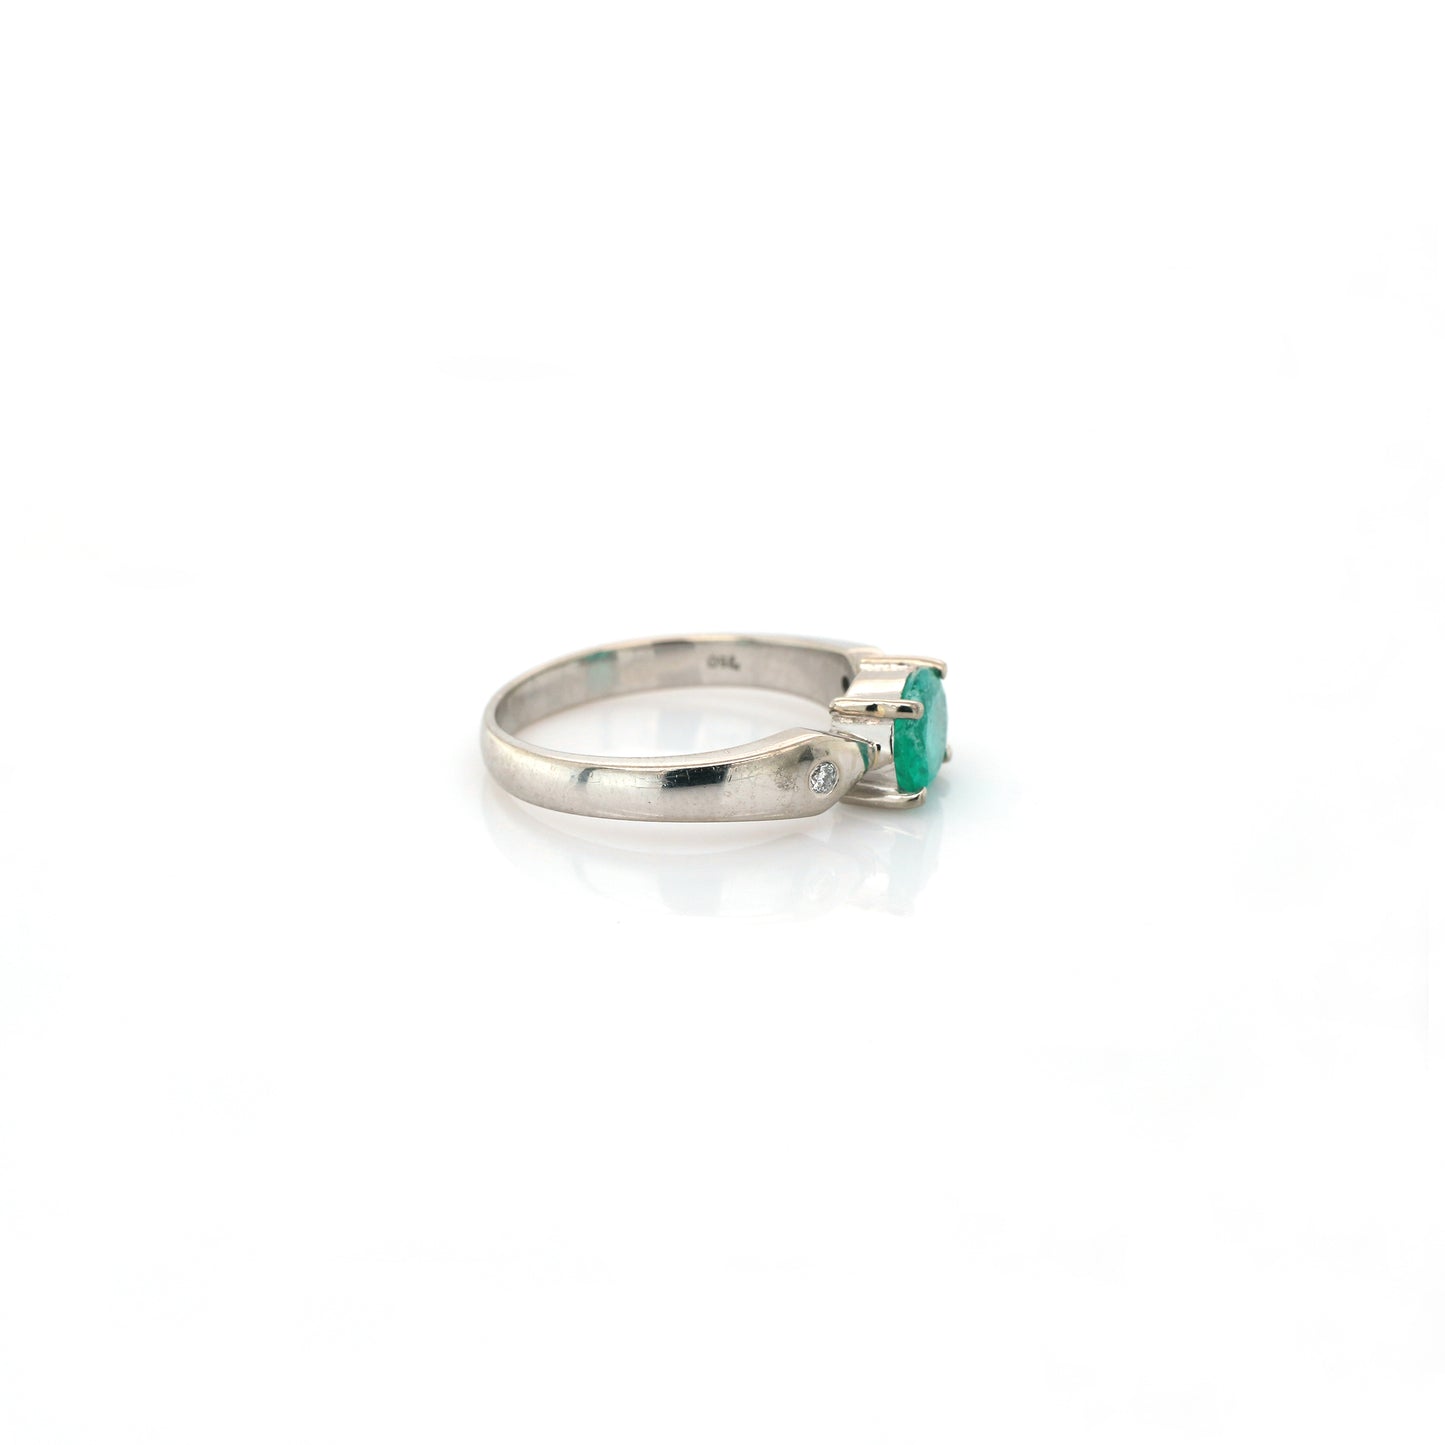 Emerald 1.0 carat & Diamond 0.04 Ladies Ring -18k White gold 4.73 gm